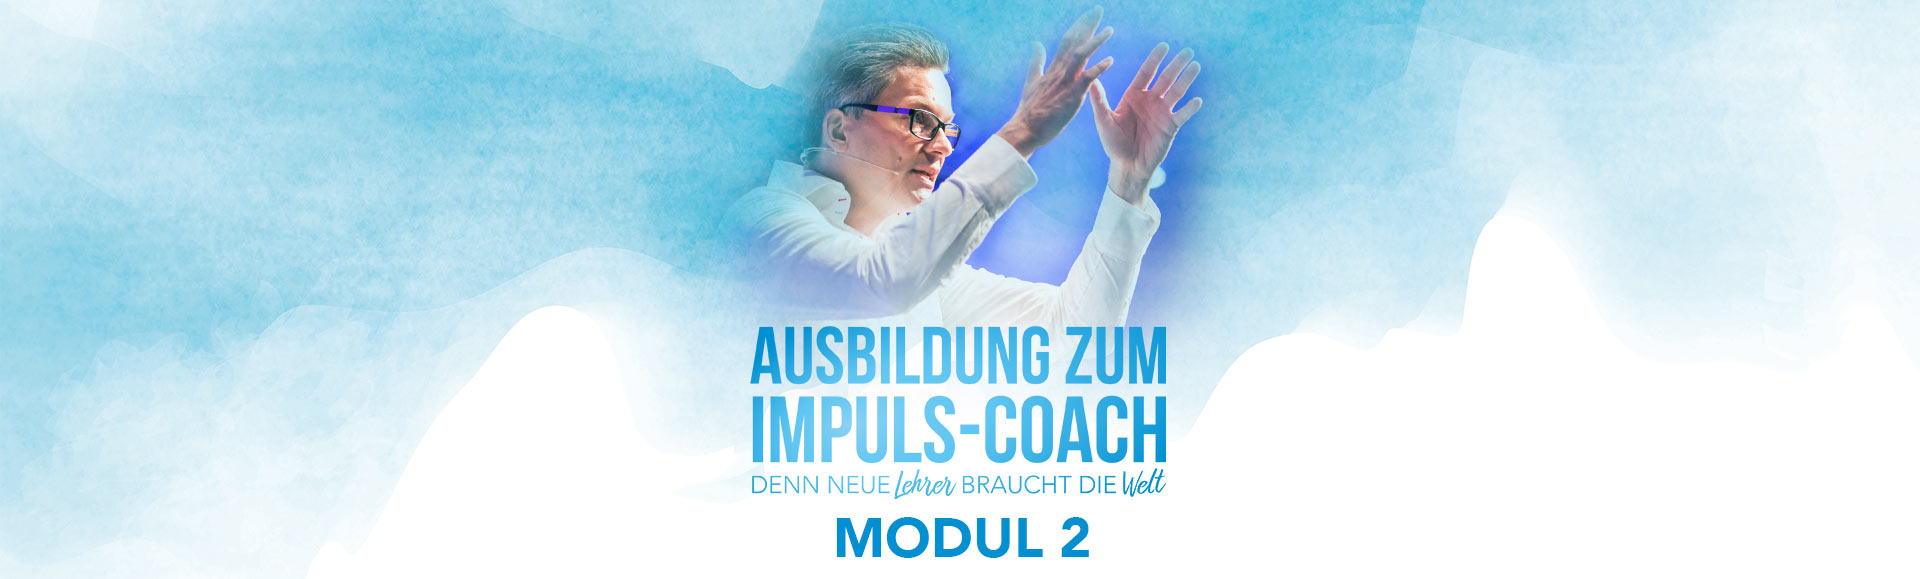 Coaching-Ausbildung_Modul2_Damian-Richter